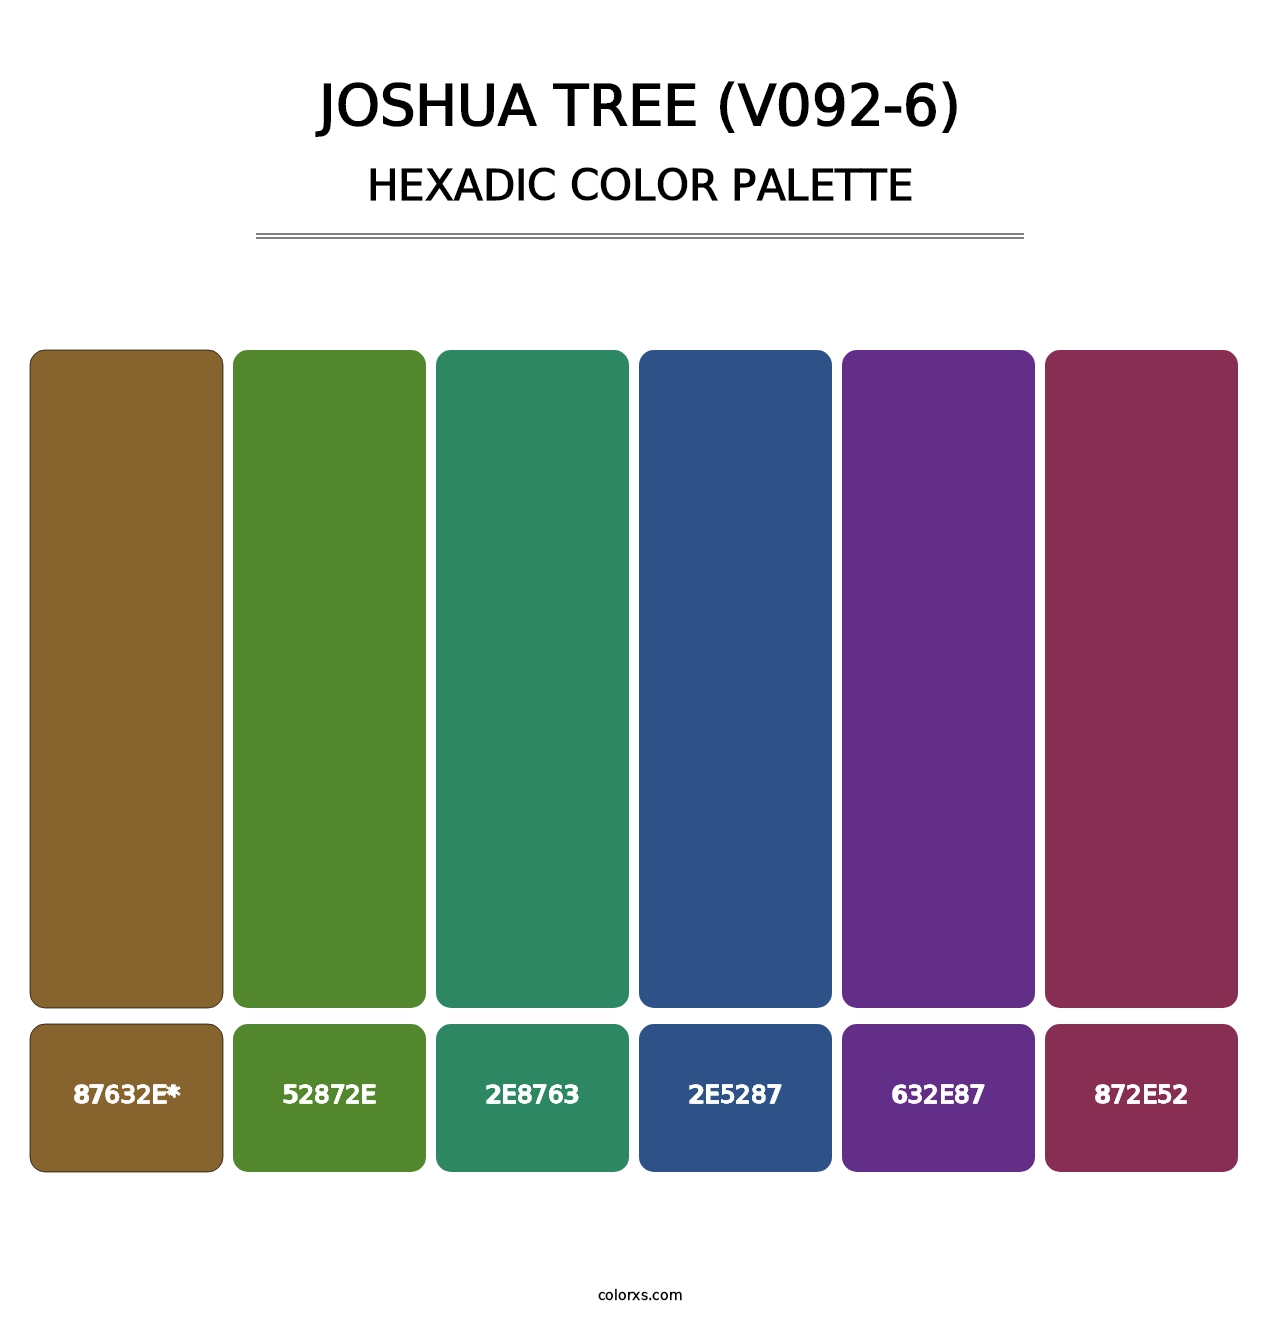 Joshua Tree (V092-6) - Hexadic Color Palette